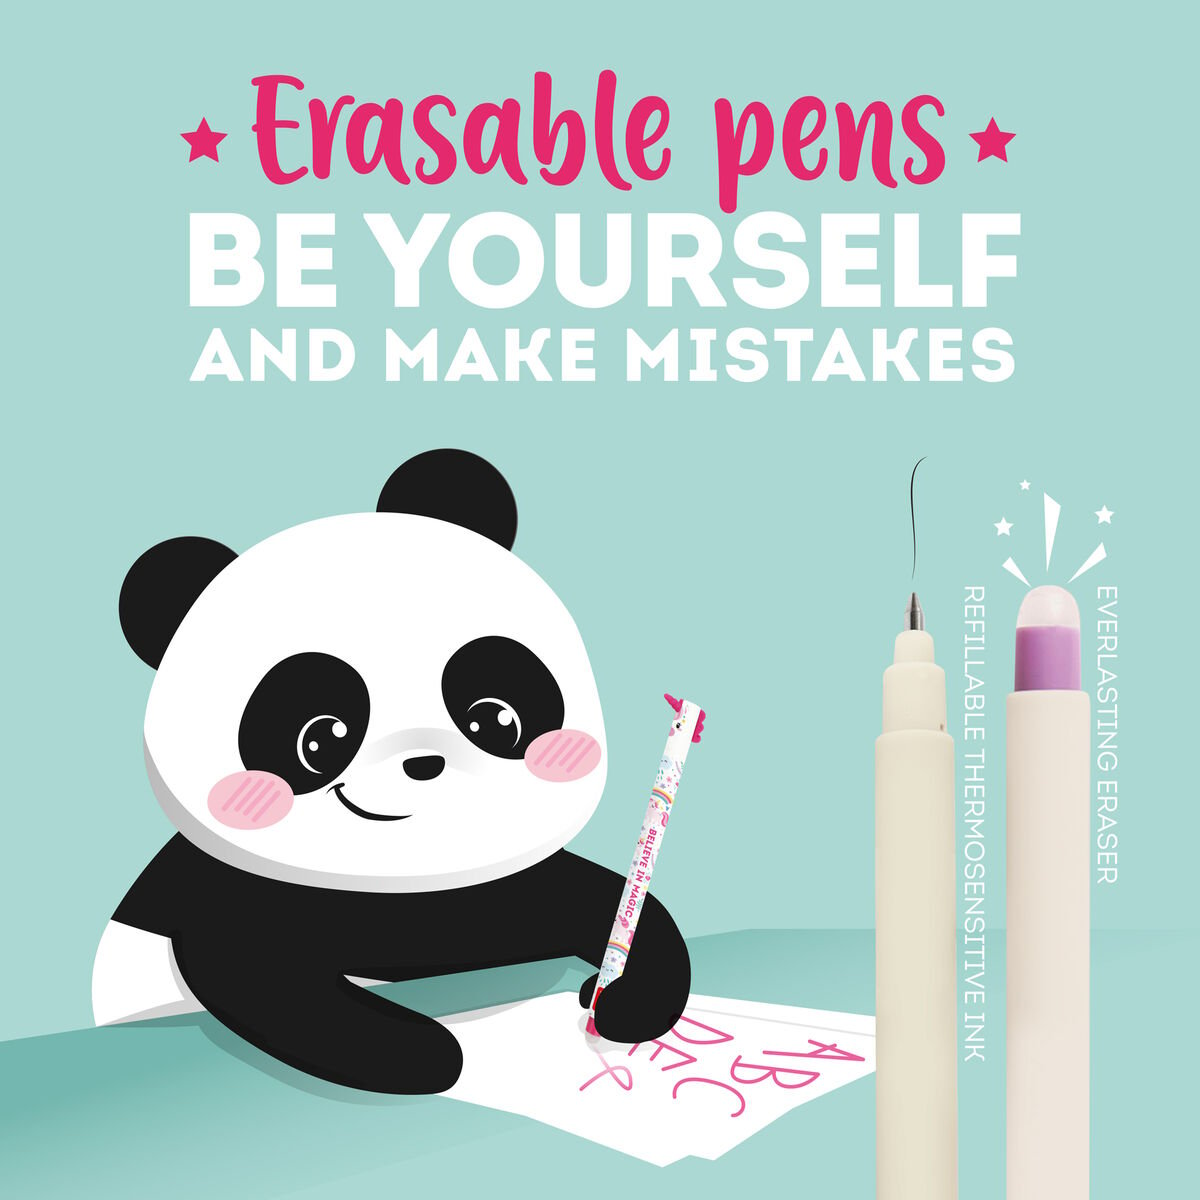 Penna Gel Cancellabile - Erasable Pen BUNNY